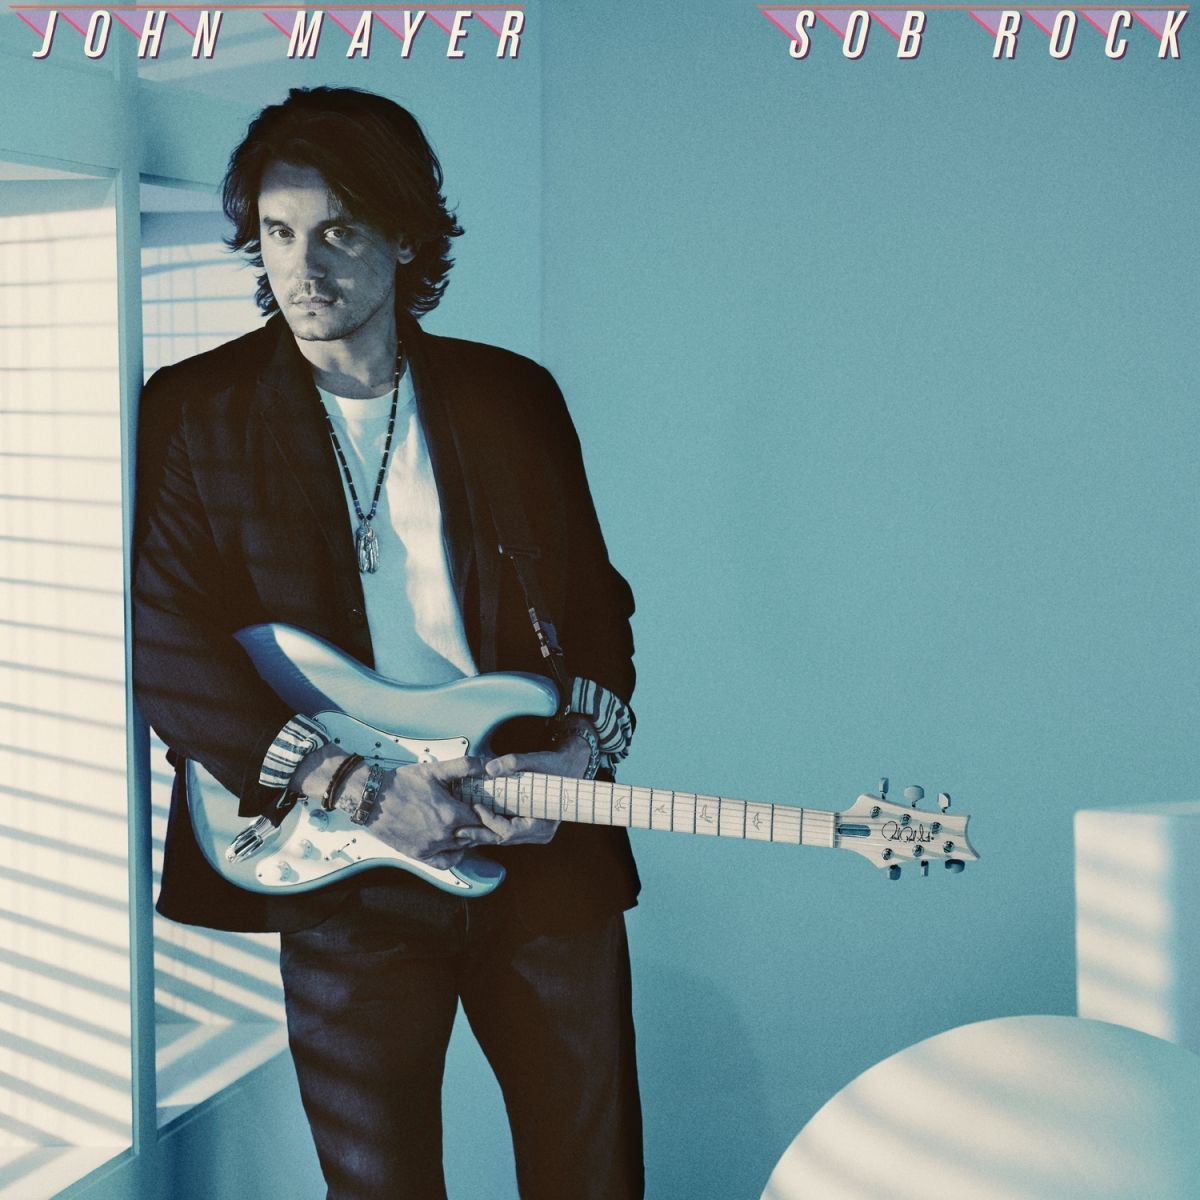 John Mayer - Sob Rock |  Vinyl LP | John Mayer - Sob Rock (LP) | Records on Vinyl